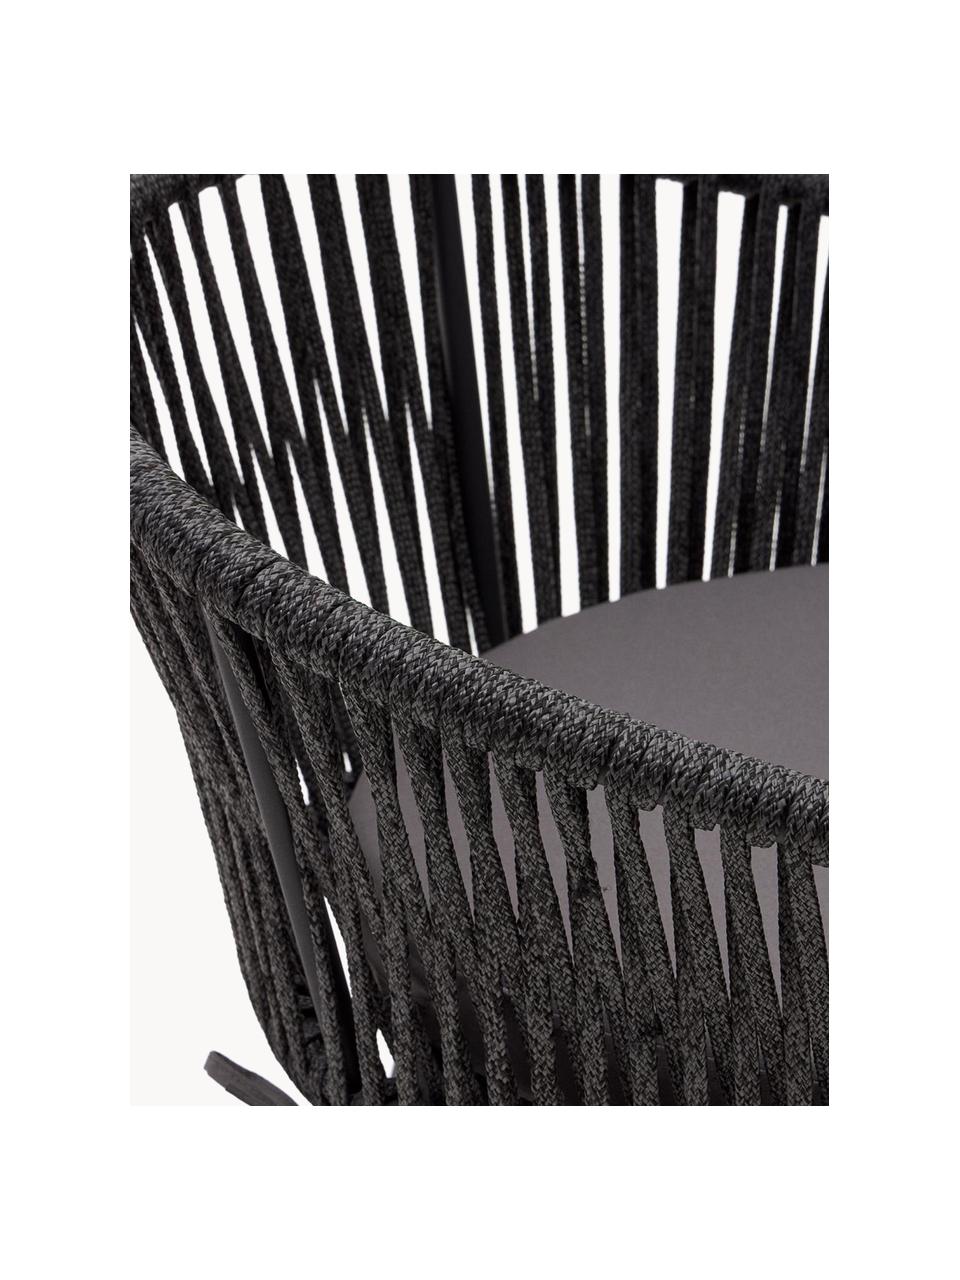 Ogrodowe krzesło barowe Yanet, 2 szt., Tapicerka: 100% poliester, Stelaż: metal ocynkowany, Ciemnoszara tkanina, czarny, S 55 x W 85 cm